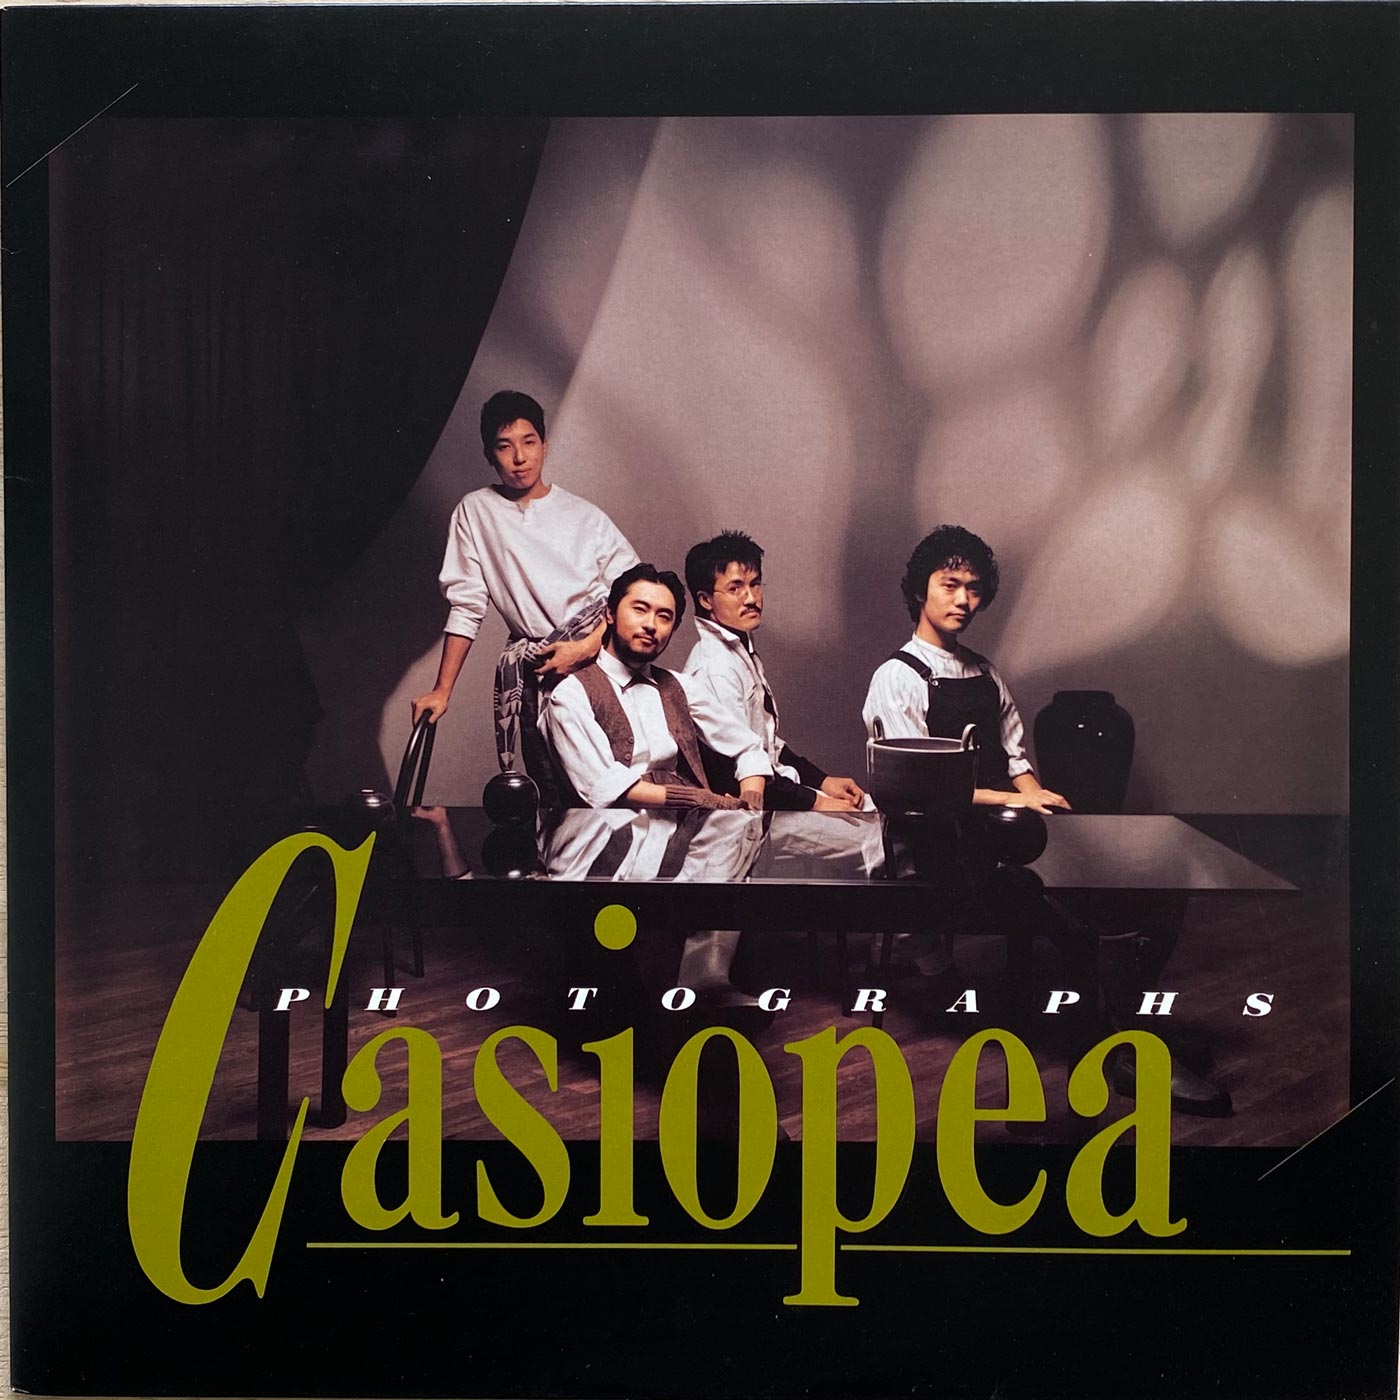 Casiopea - Photographs